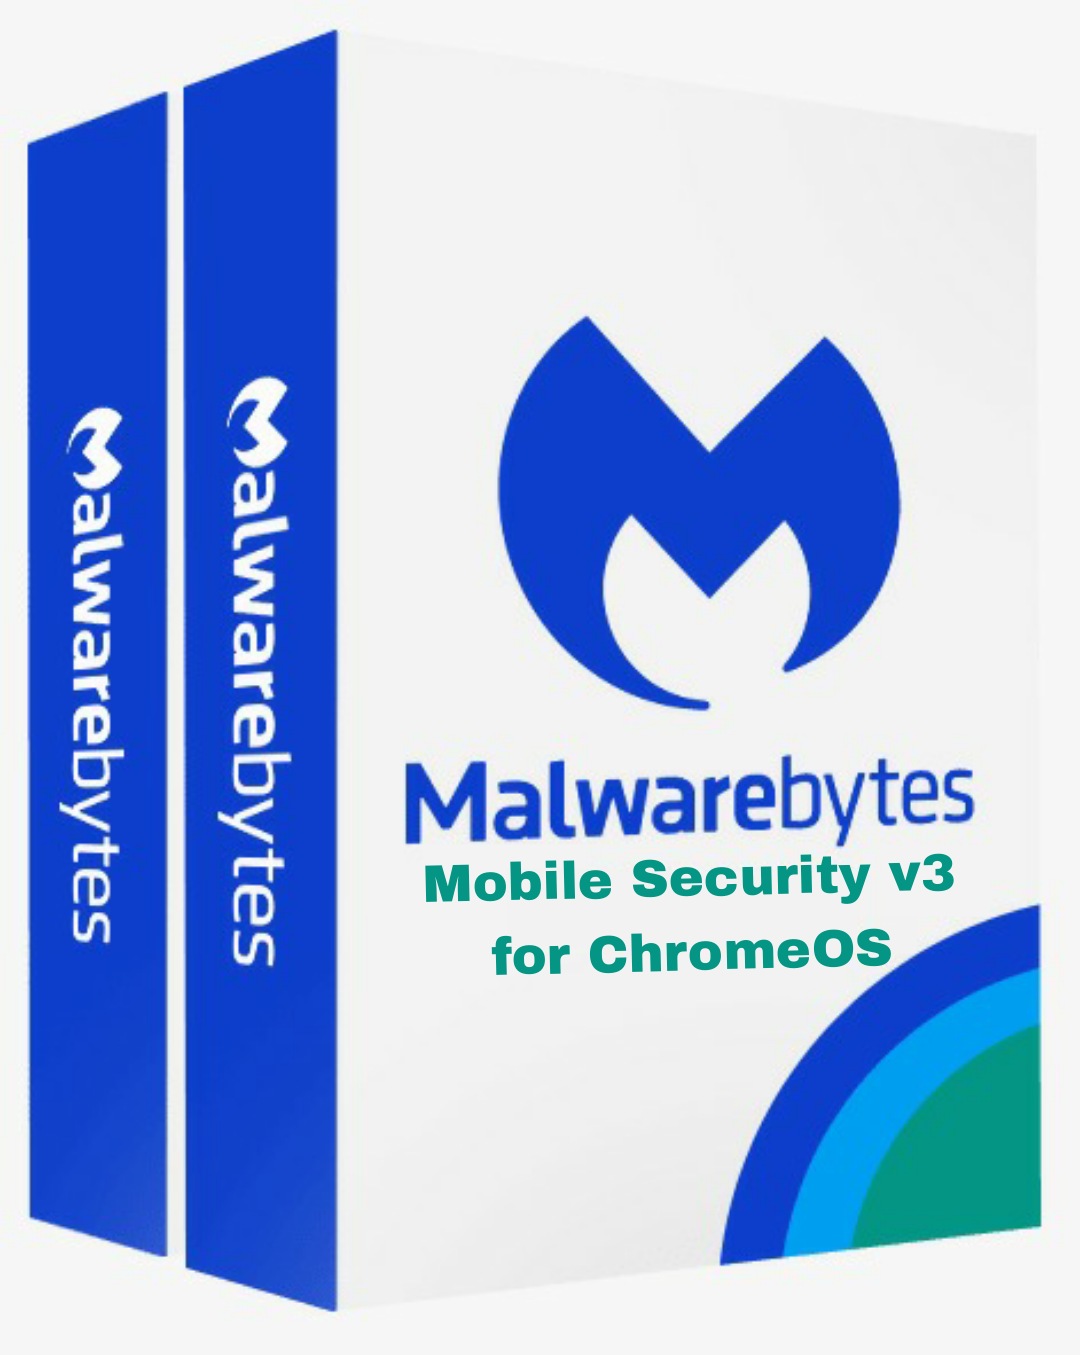 Malwarebytes Mobile Security v3 for ChromeOS